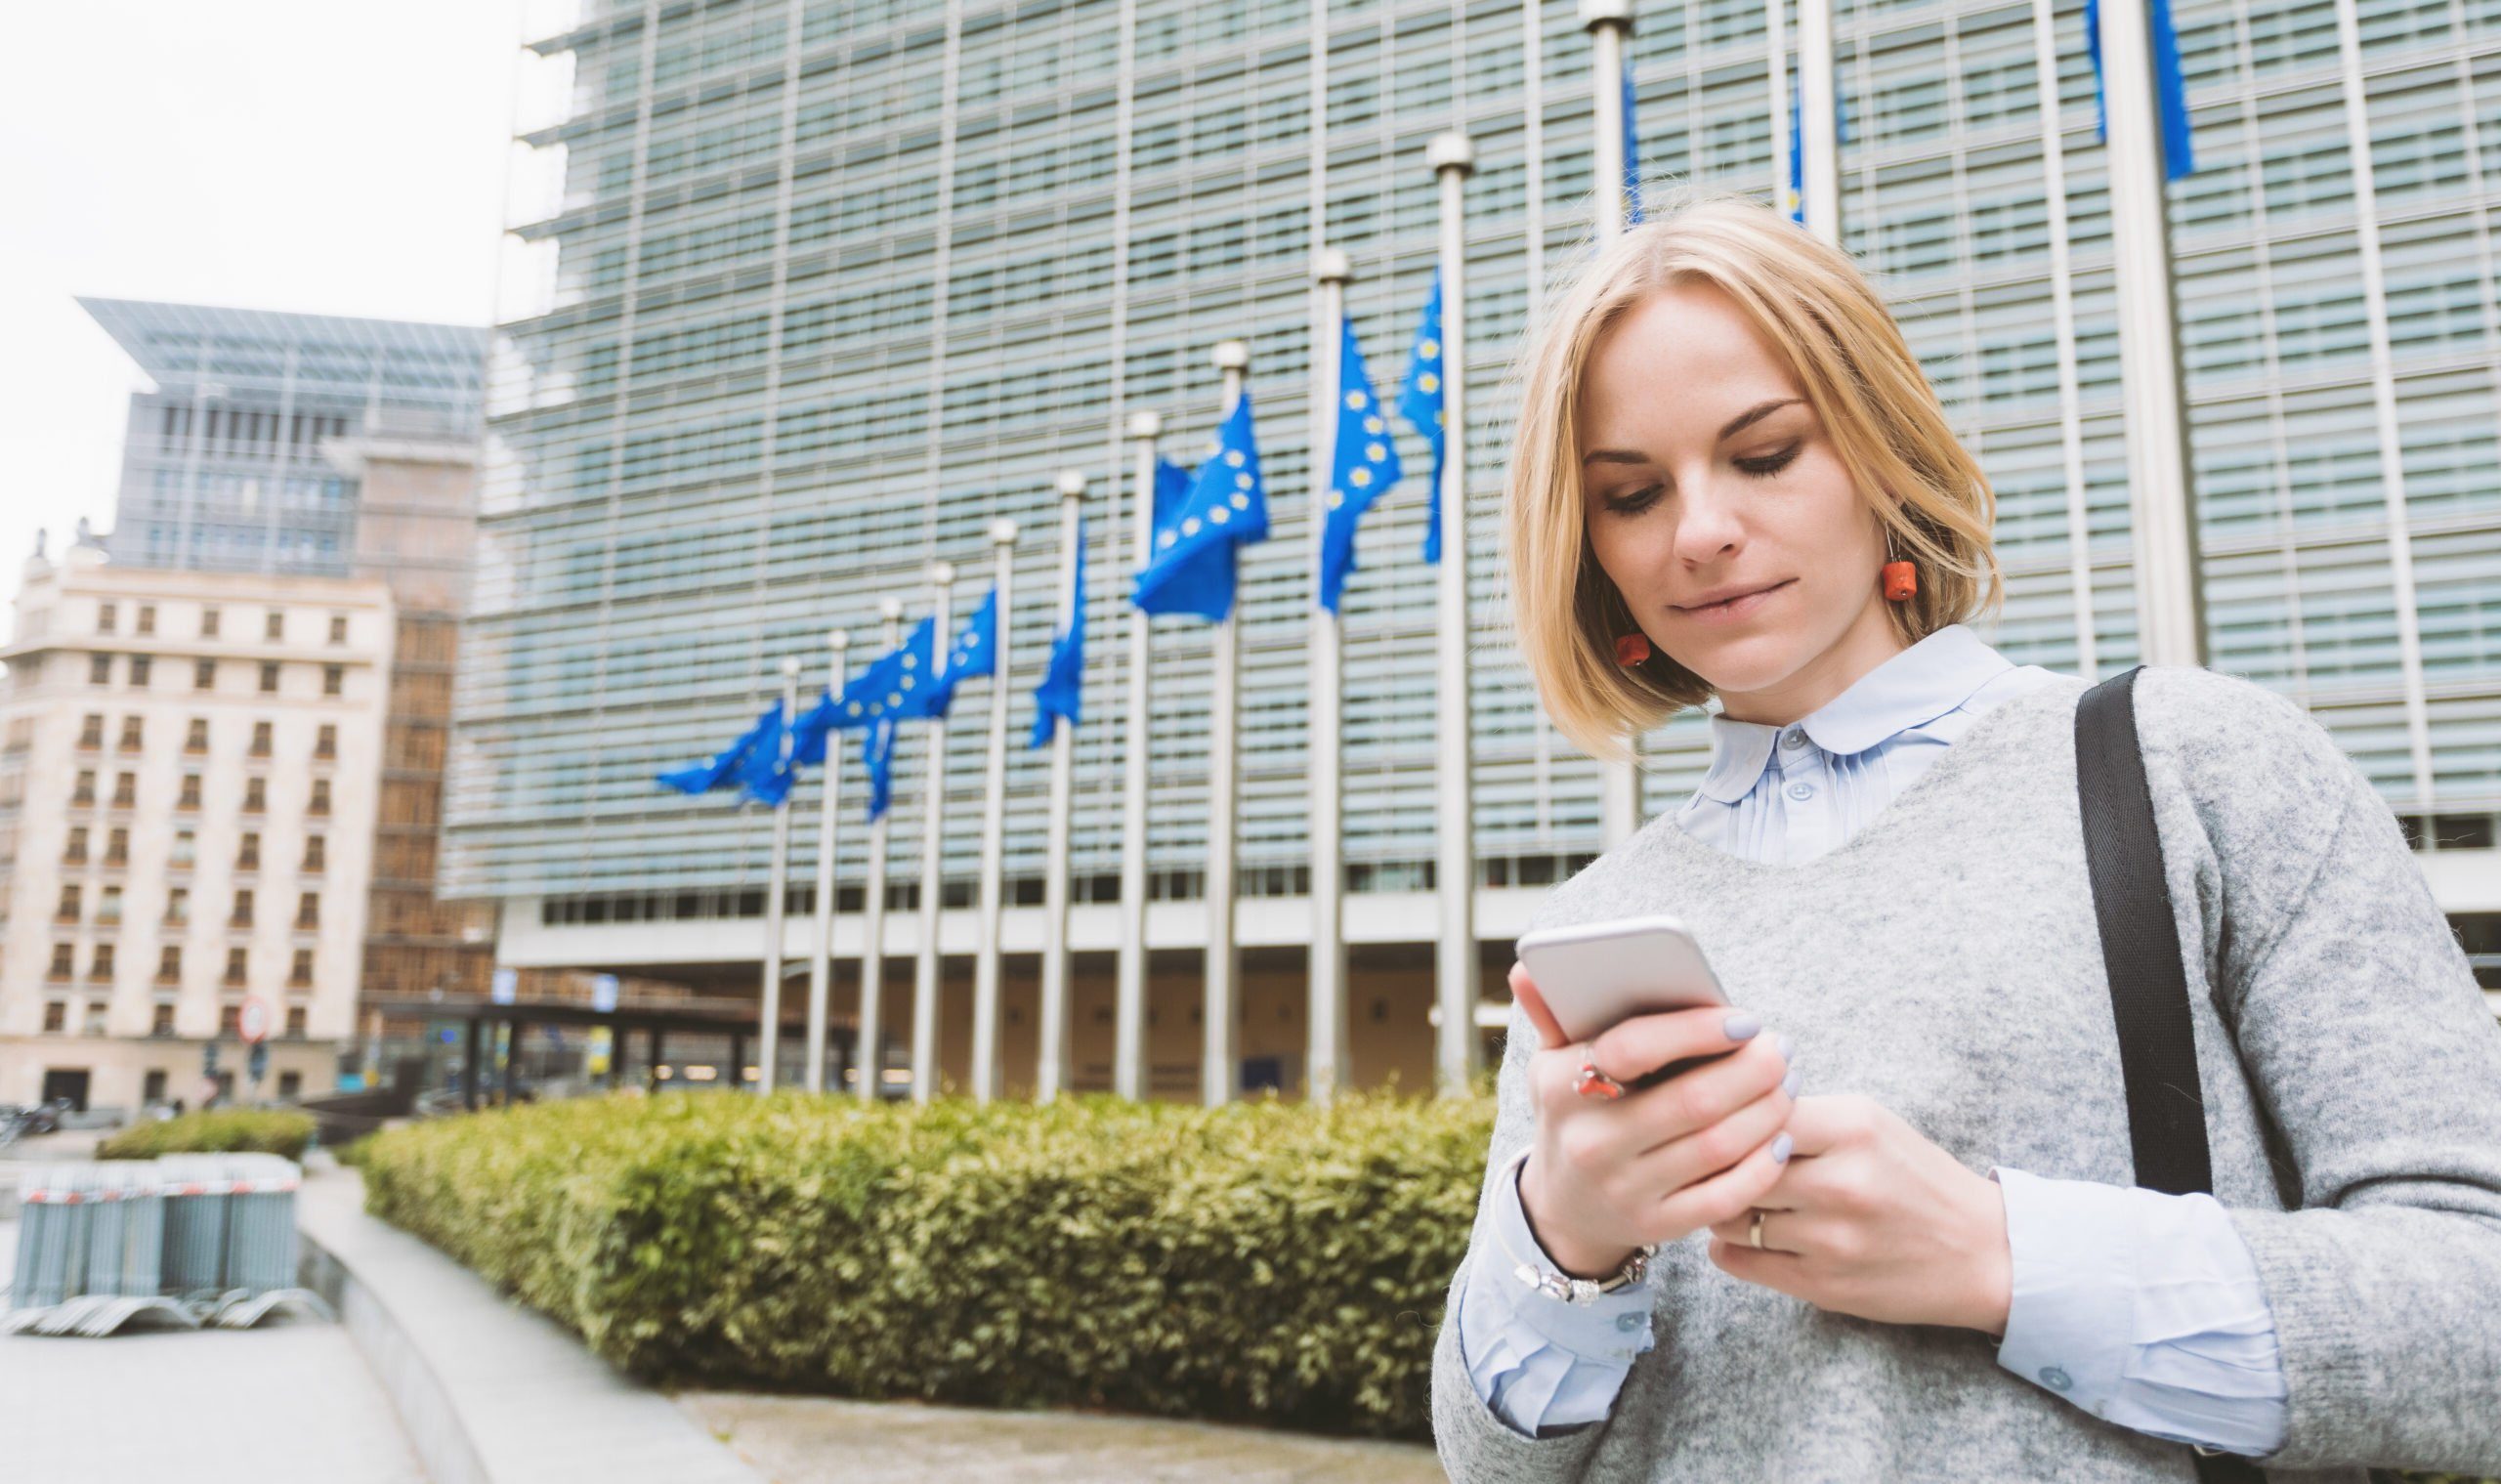 Młoda kobieta korzystająca ze smartfona na tle budynku z flagami Unii Europejskiej.